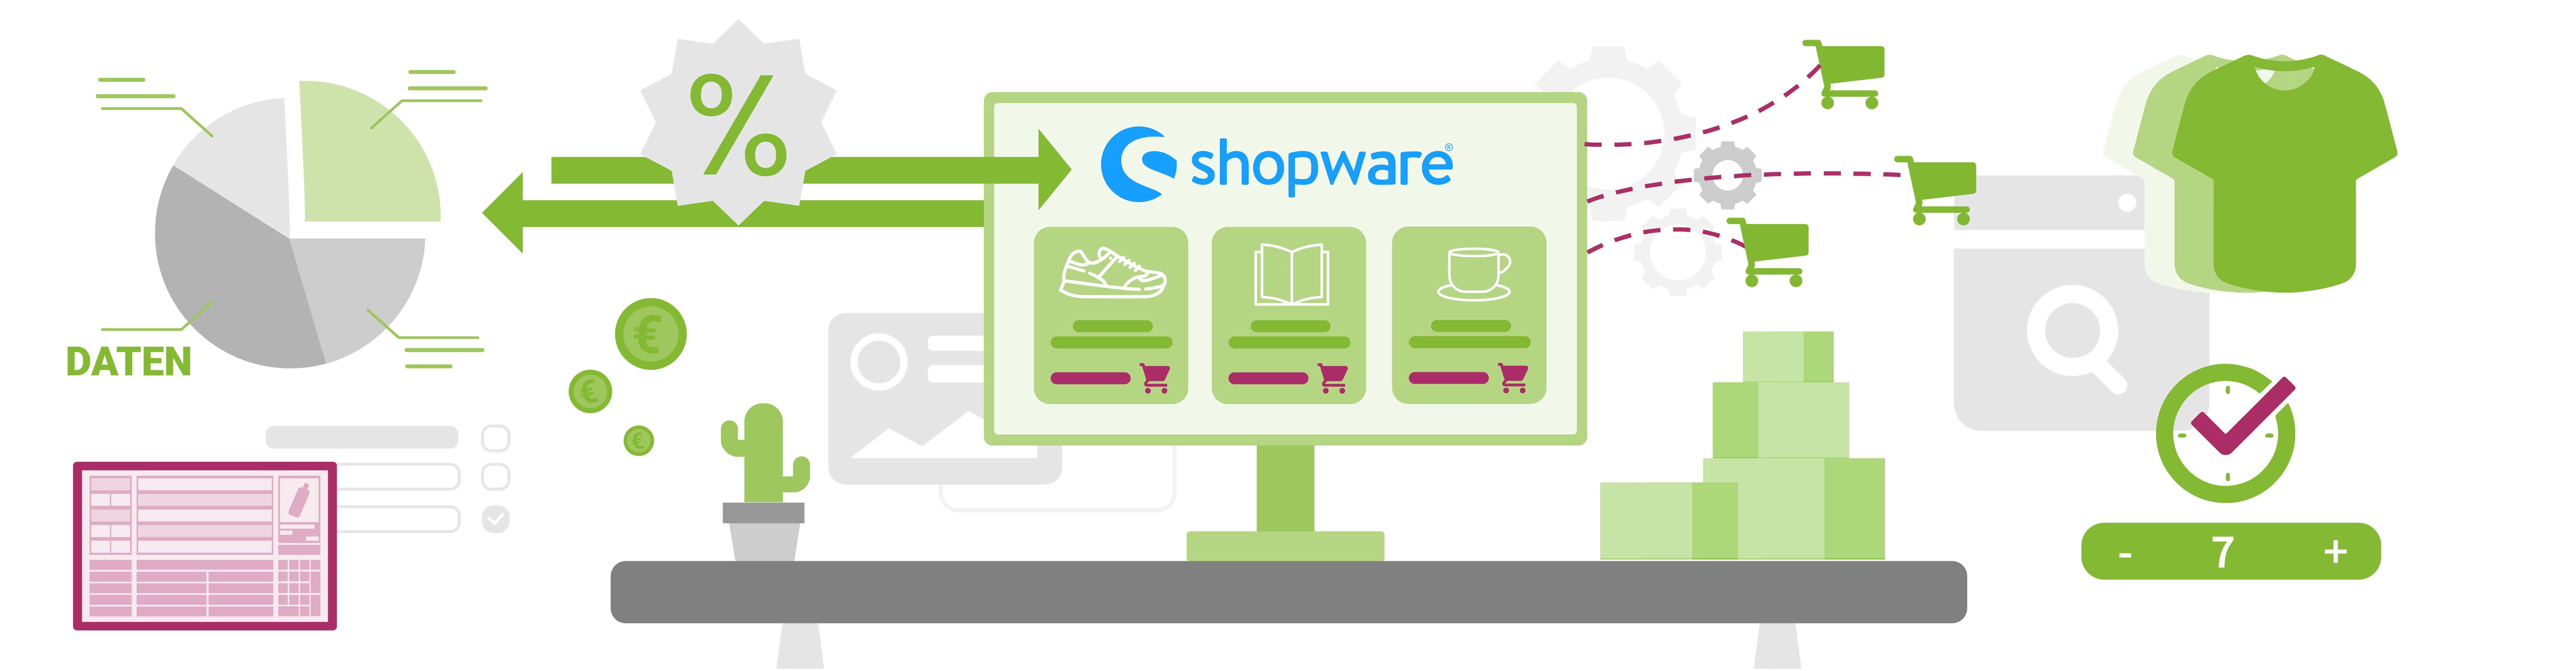 Shopware-Schnittstelle im VARIO ERP